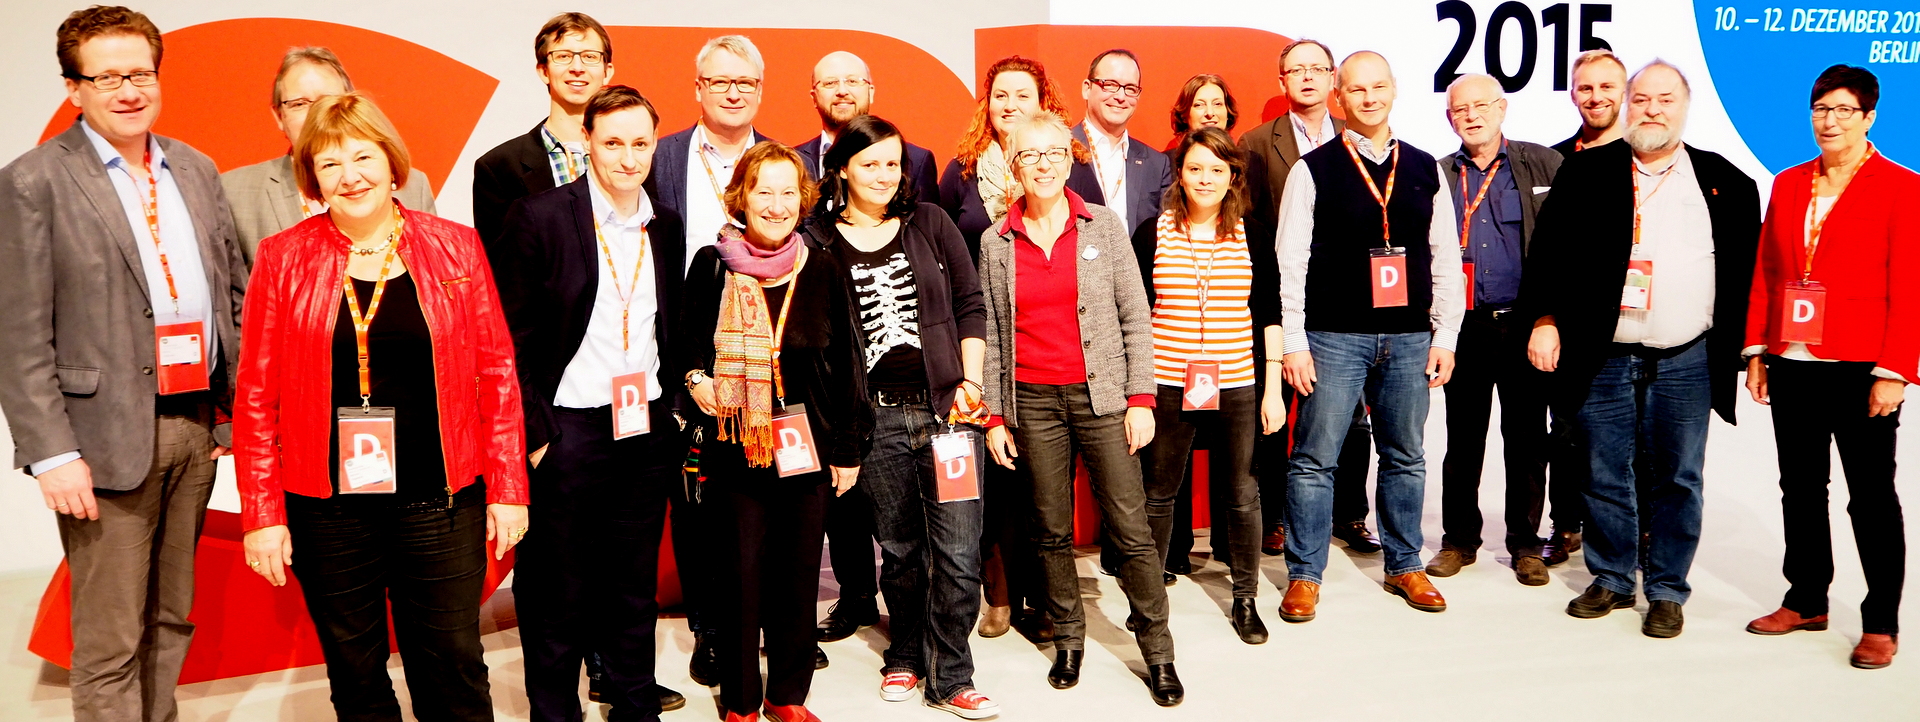 Delegierte der SPD Schleswig-Holstein auf dem Bundesparteitag